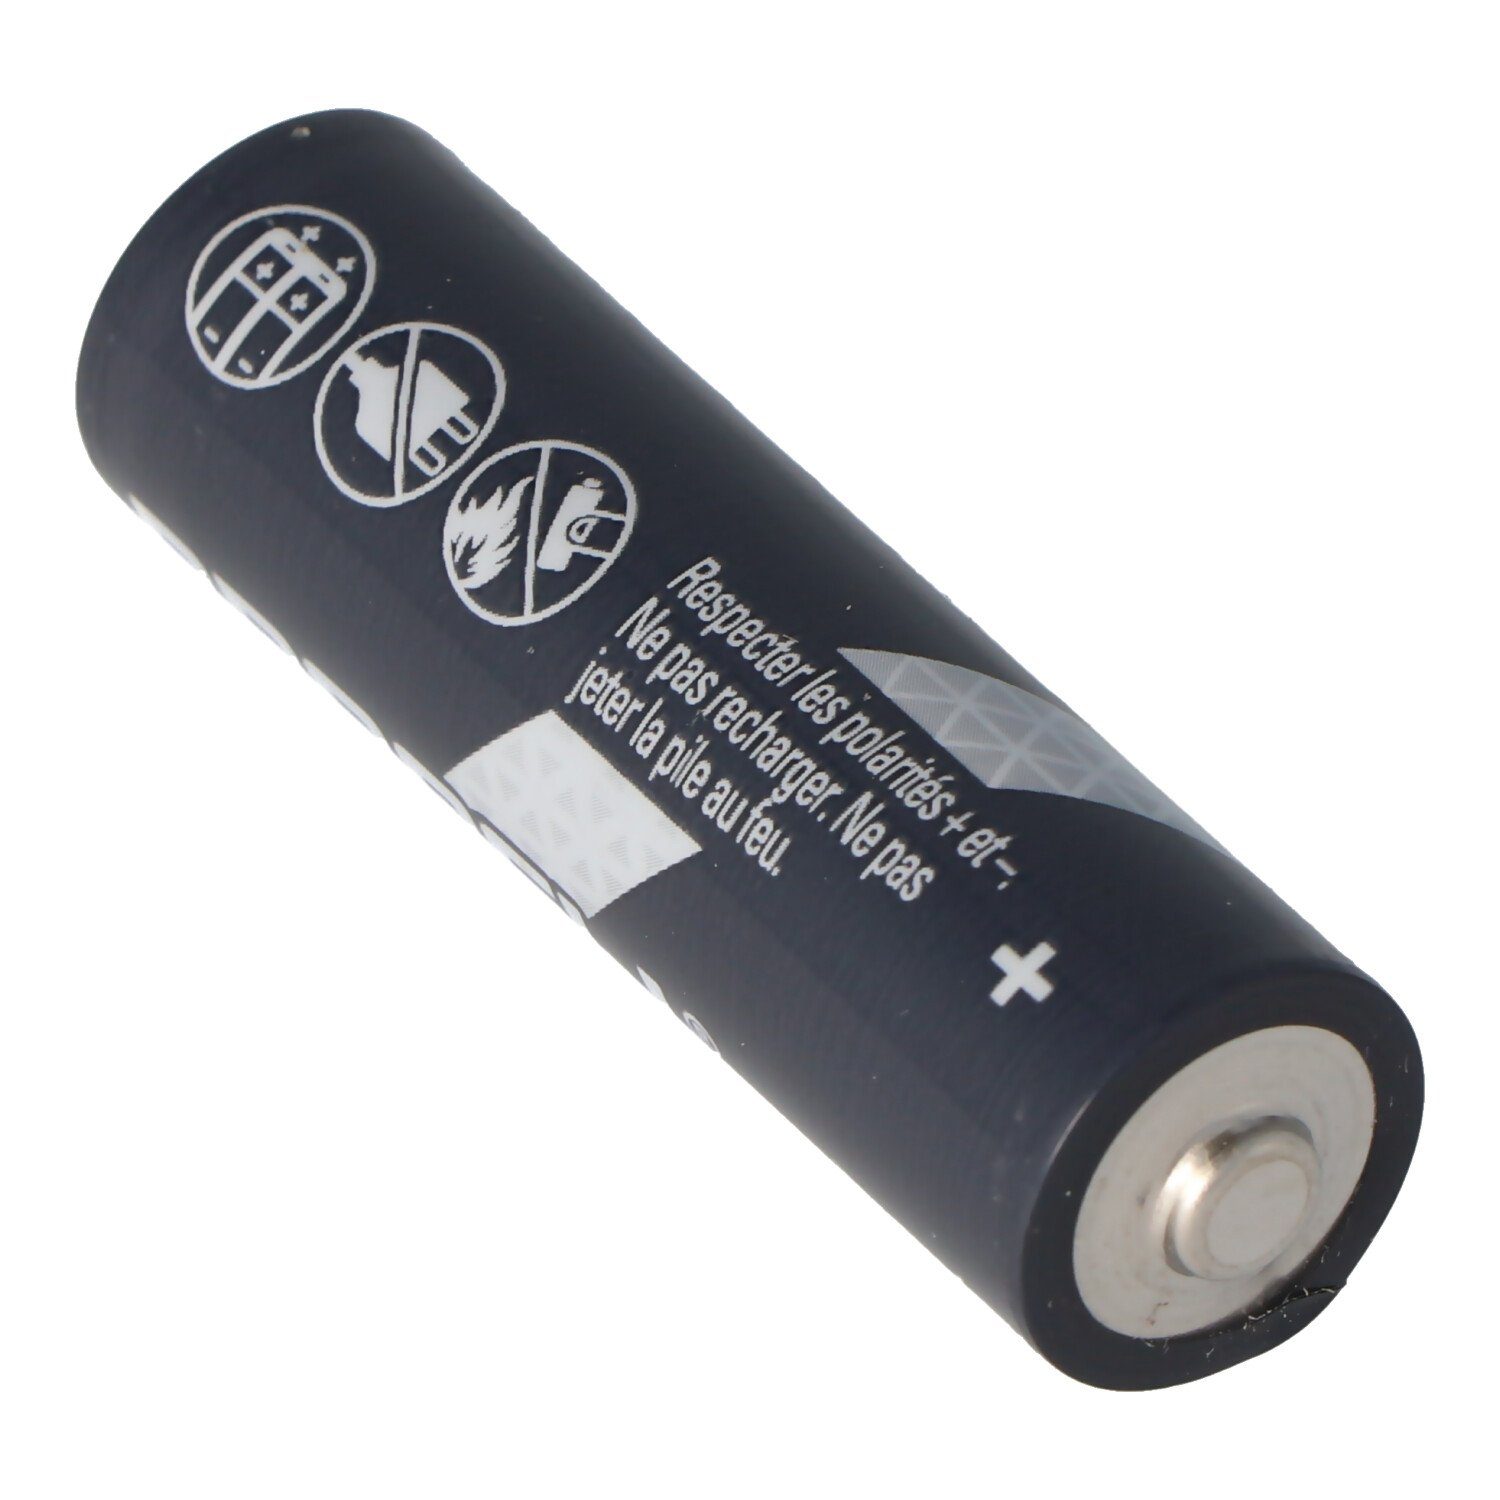 10 Procell Batterie, Mignon, AA Stück (1,5 Duracell V) LR6 im Duracell Karton Alkaline